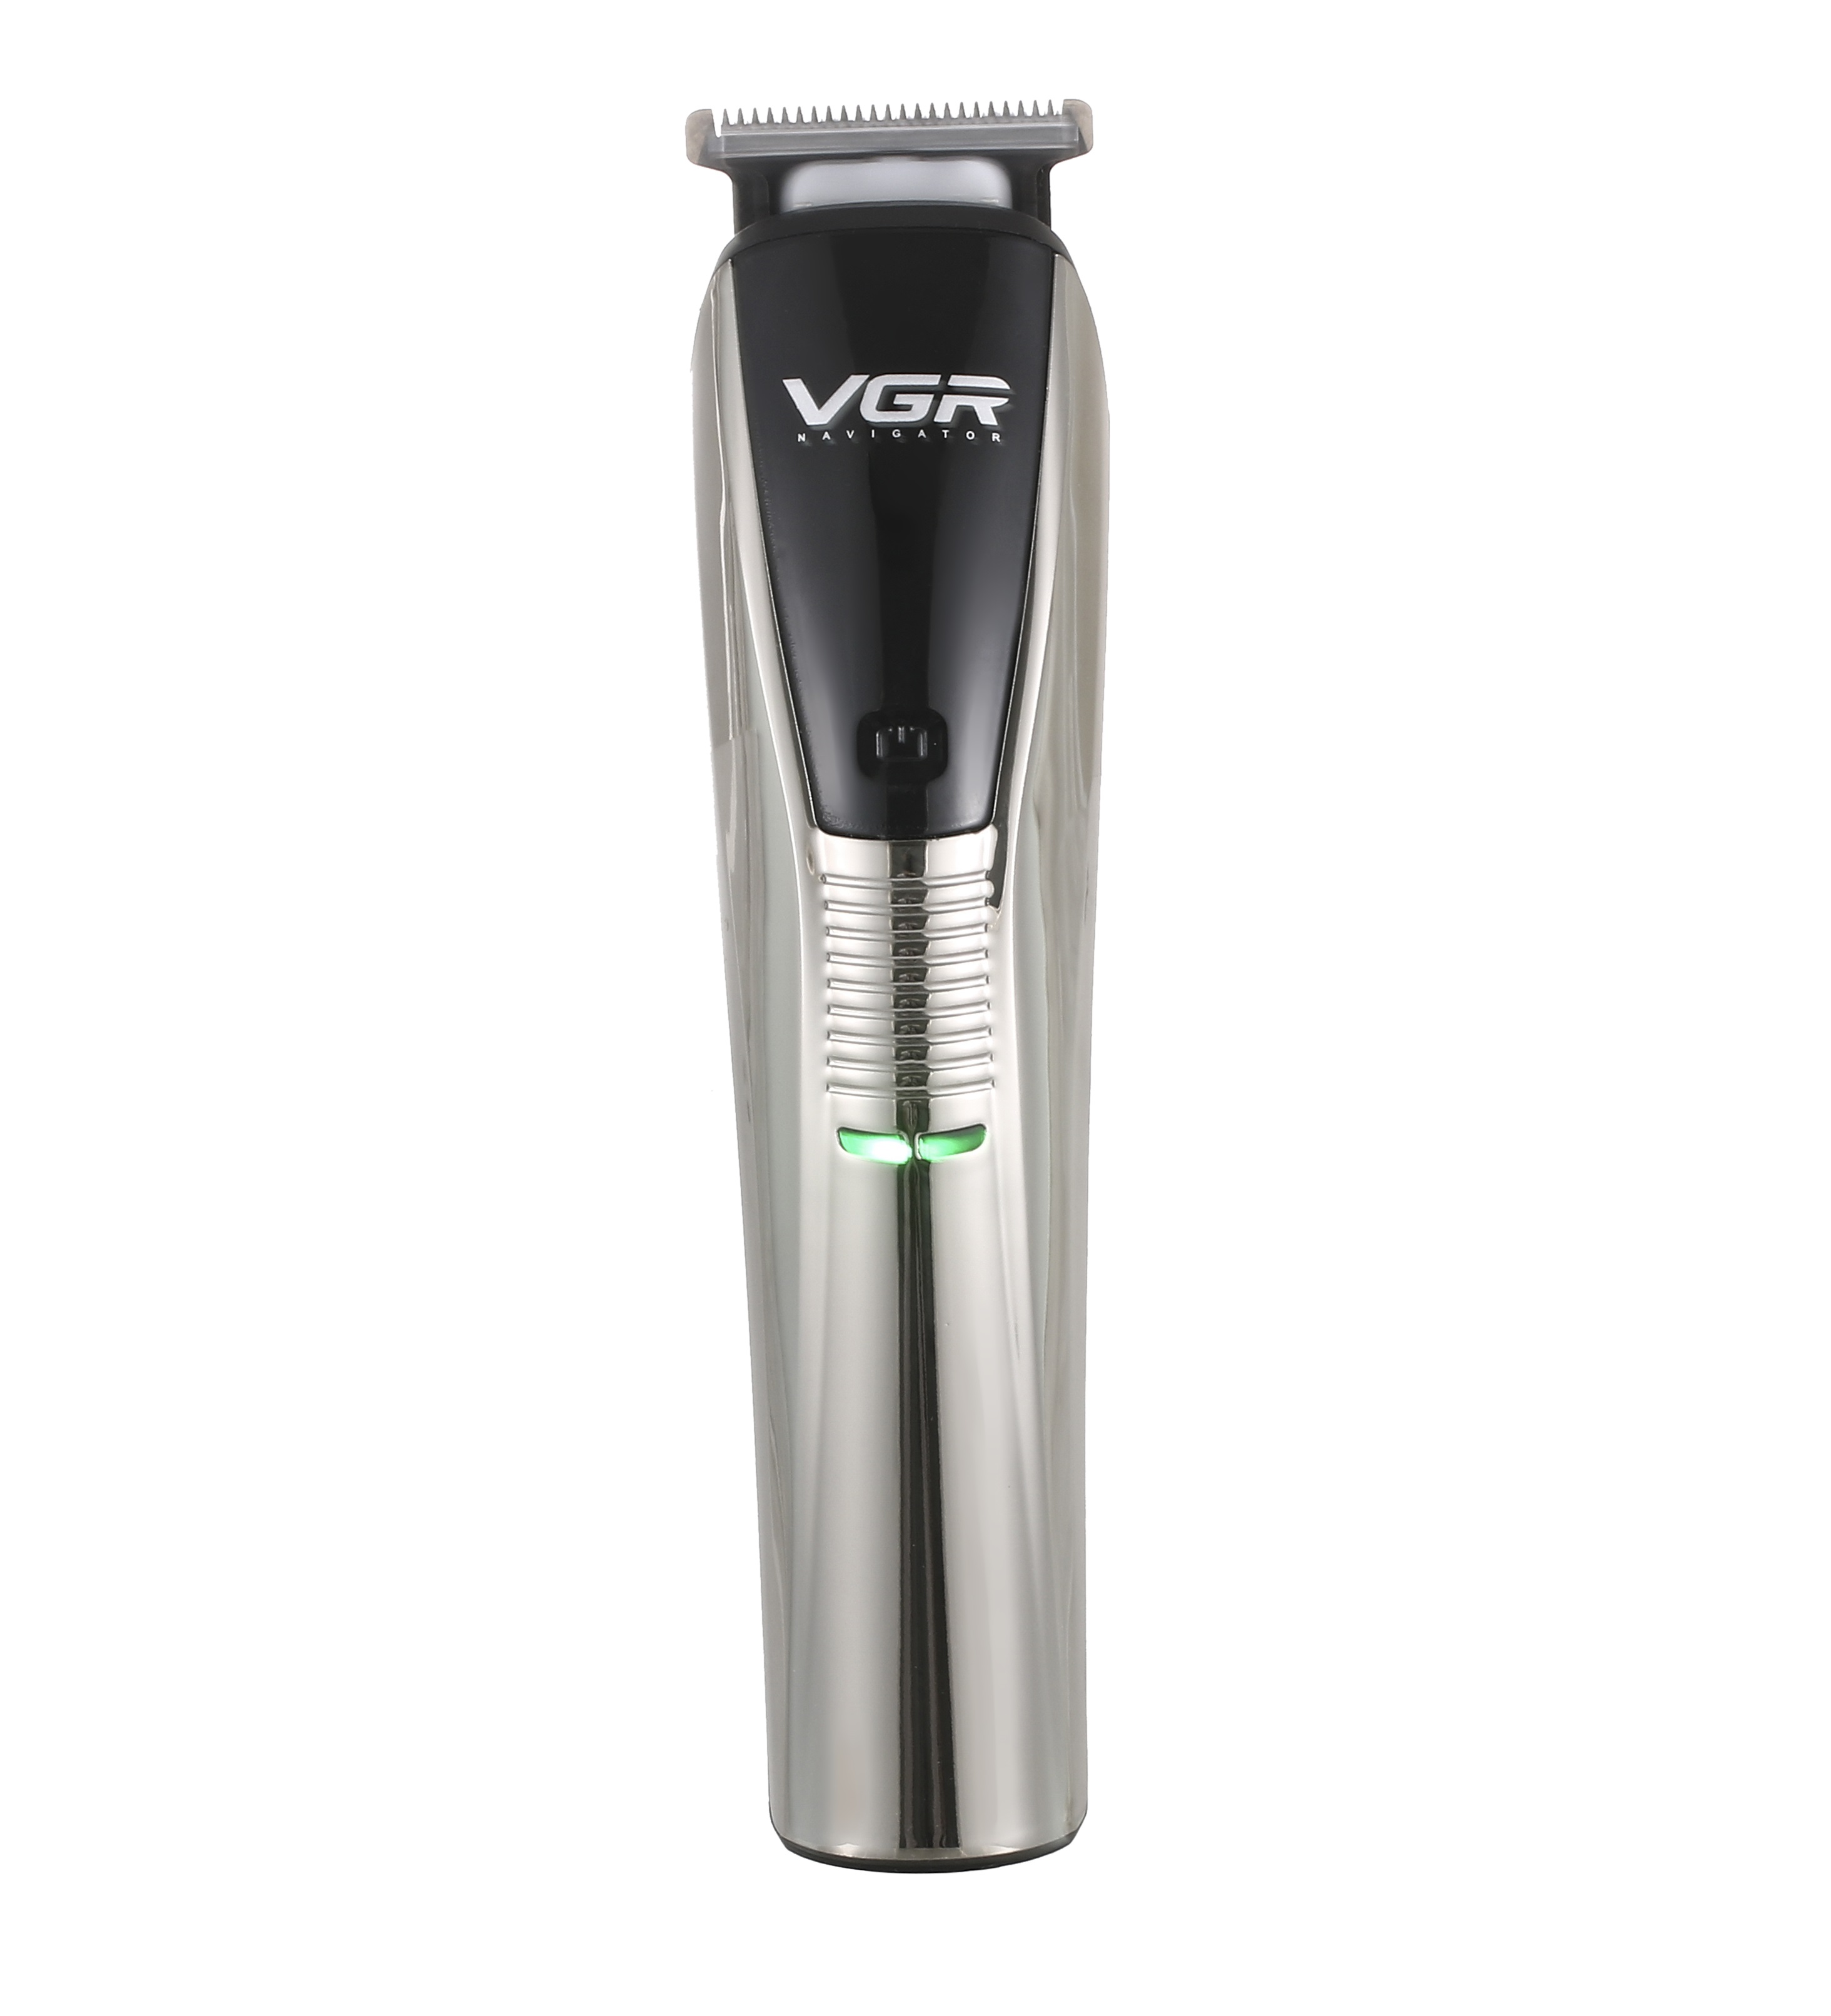 Машинка для стрижки волос VGR Professional V-029 черный набор подарочный для мужчин svoboda men care сила свежести шампунь бальзам 2в1 для влос гель для душа